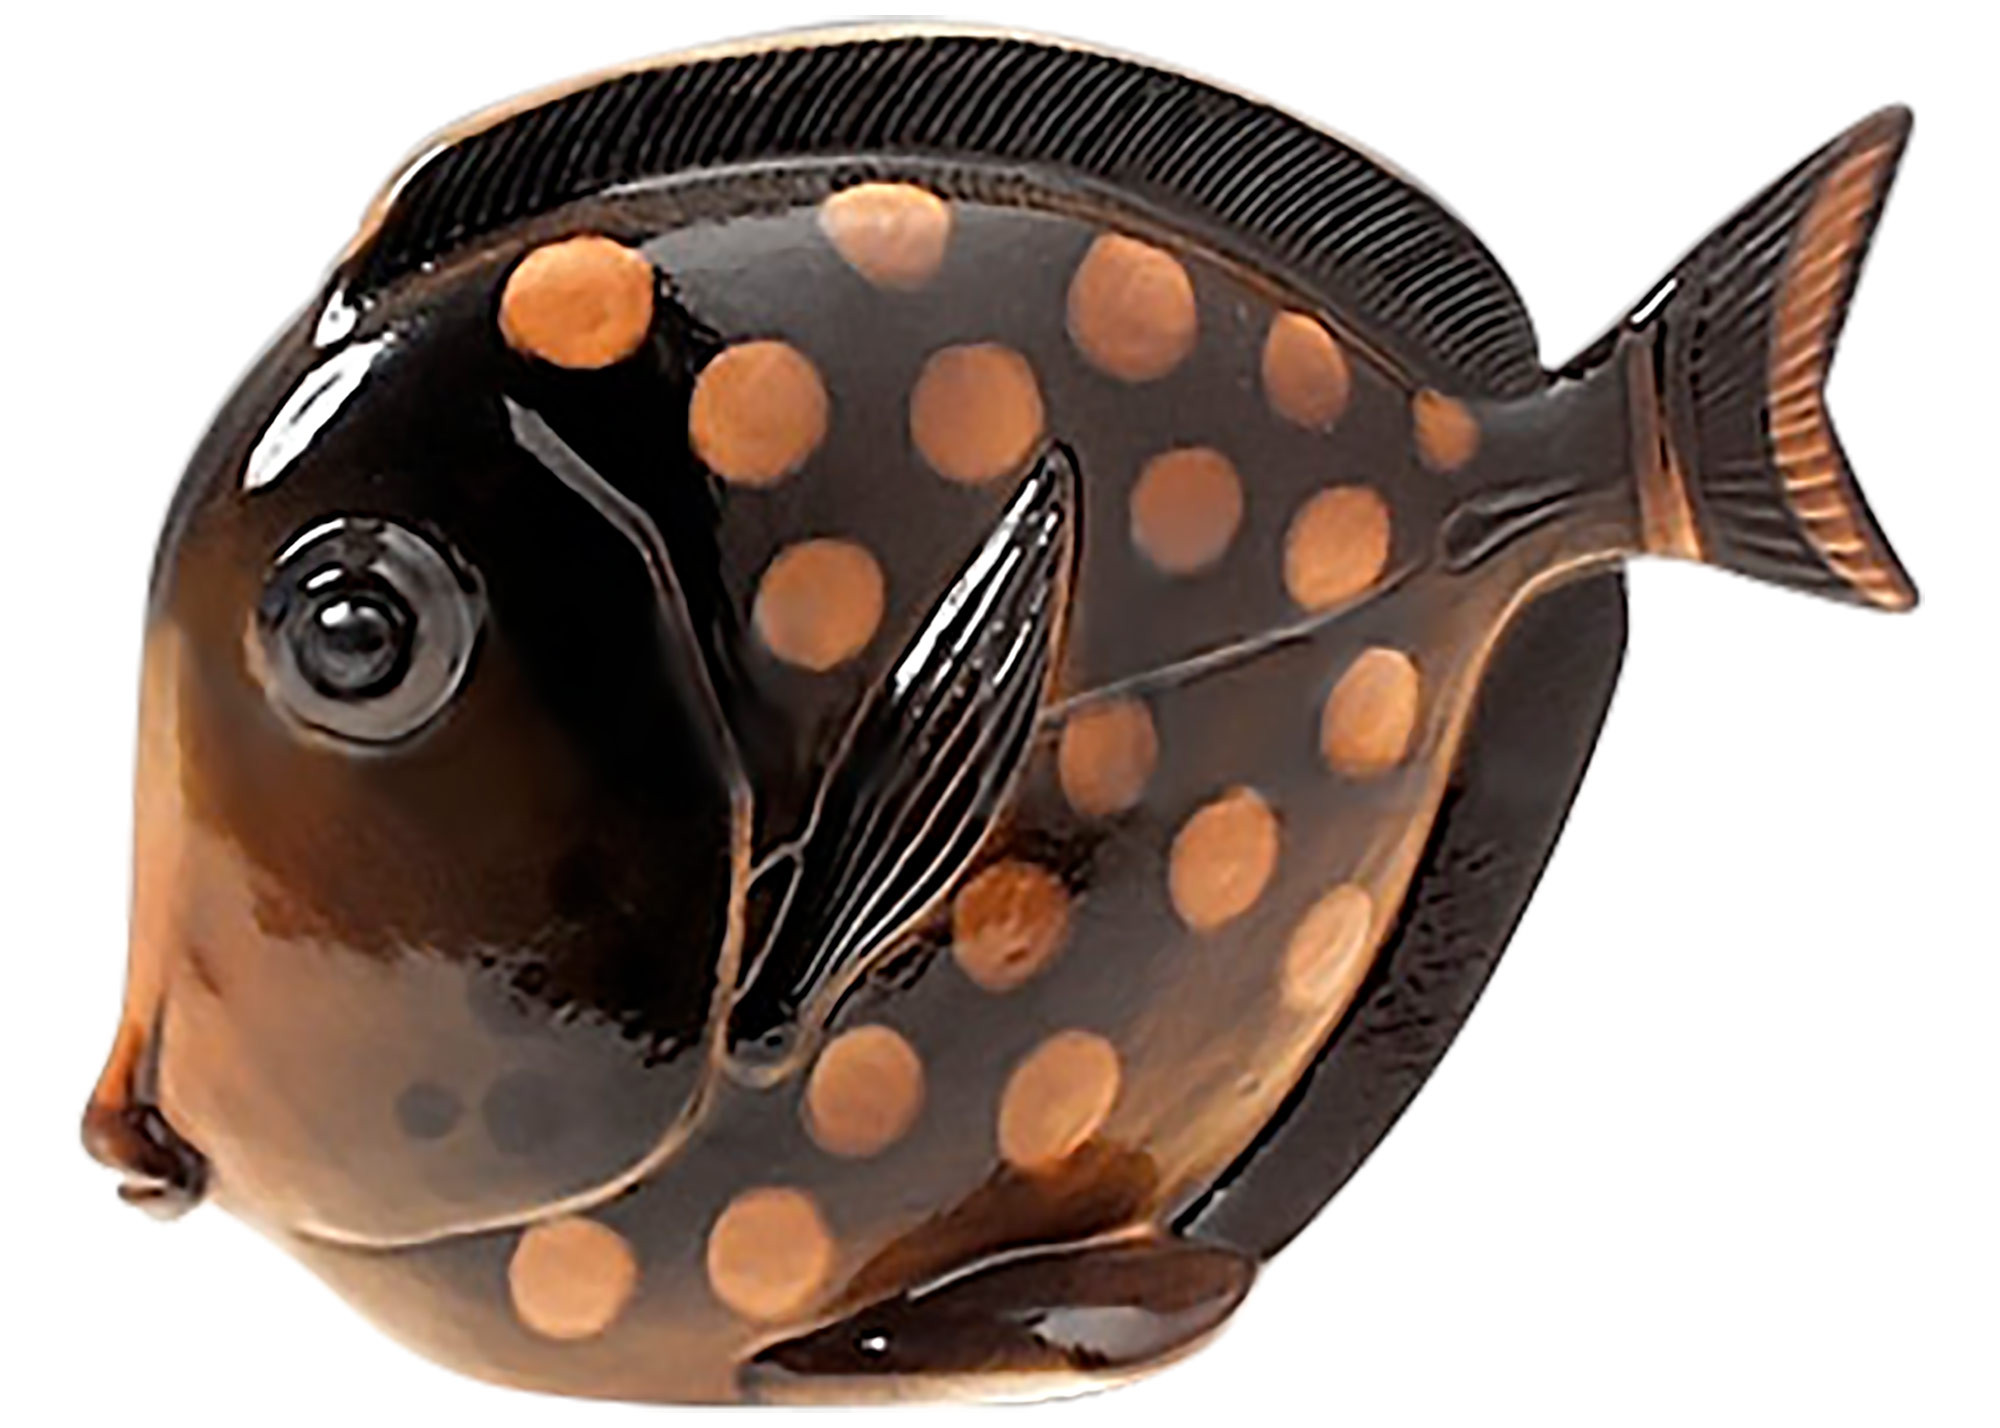 Buy Medium-Sized Fish Figurine at GoldenCockerel.com